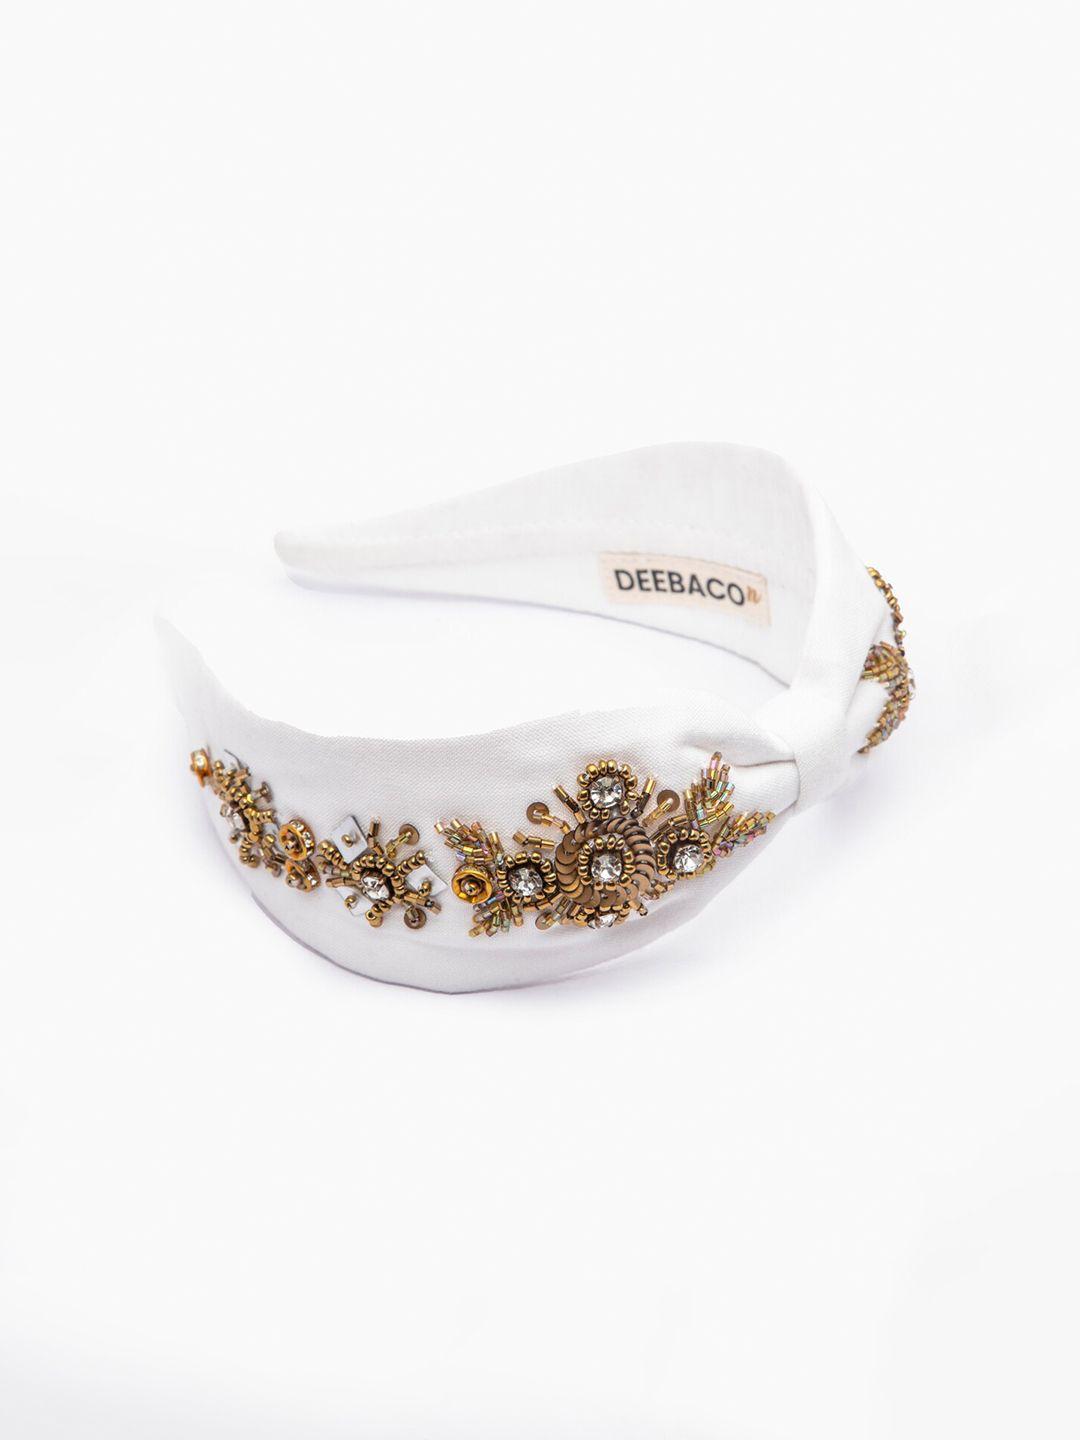 deebaco girls white & gold-toned embellished hairband